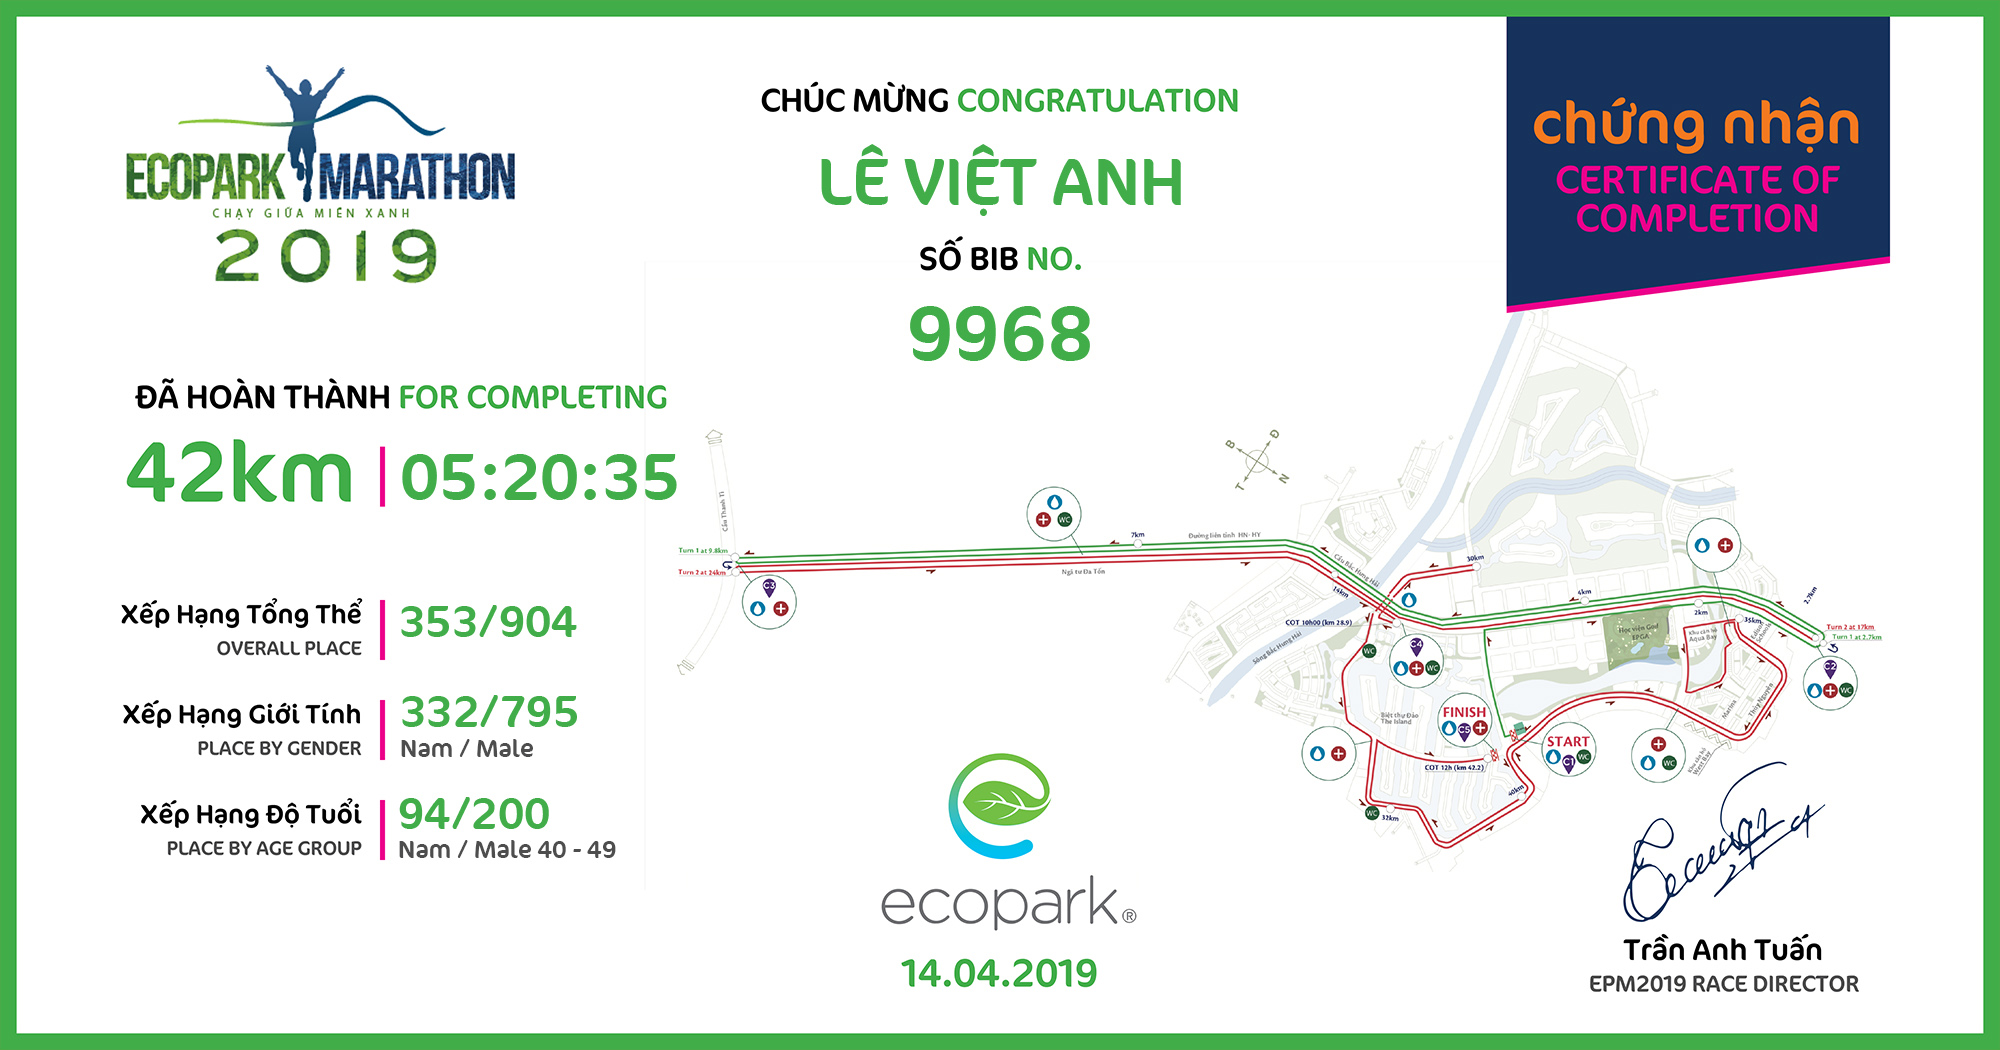 9968 - Lê Việt Anh